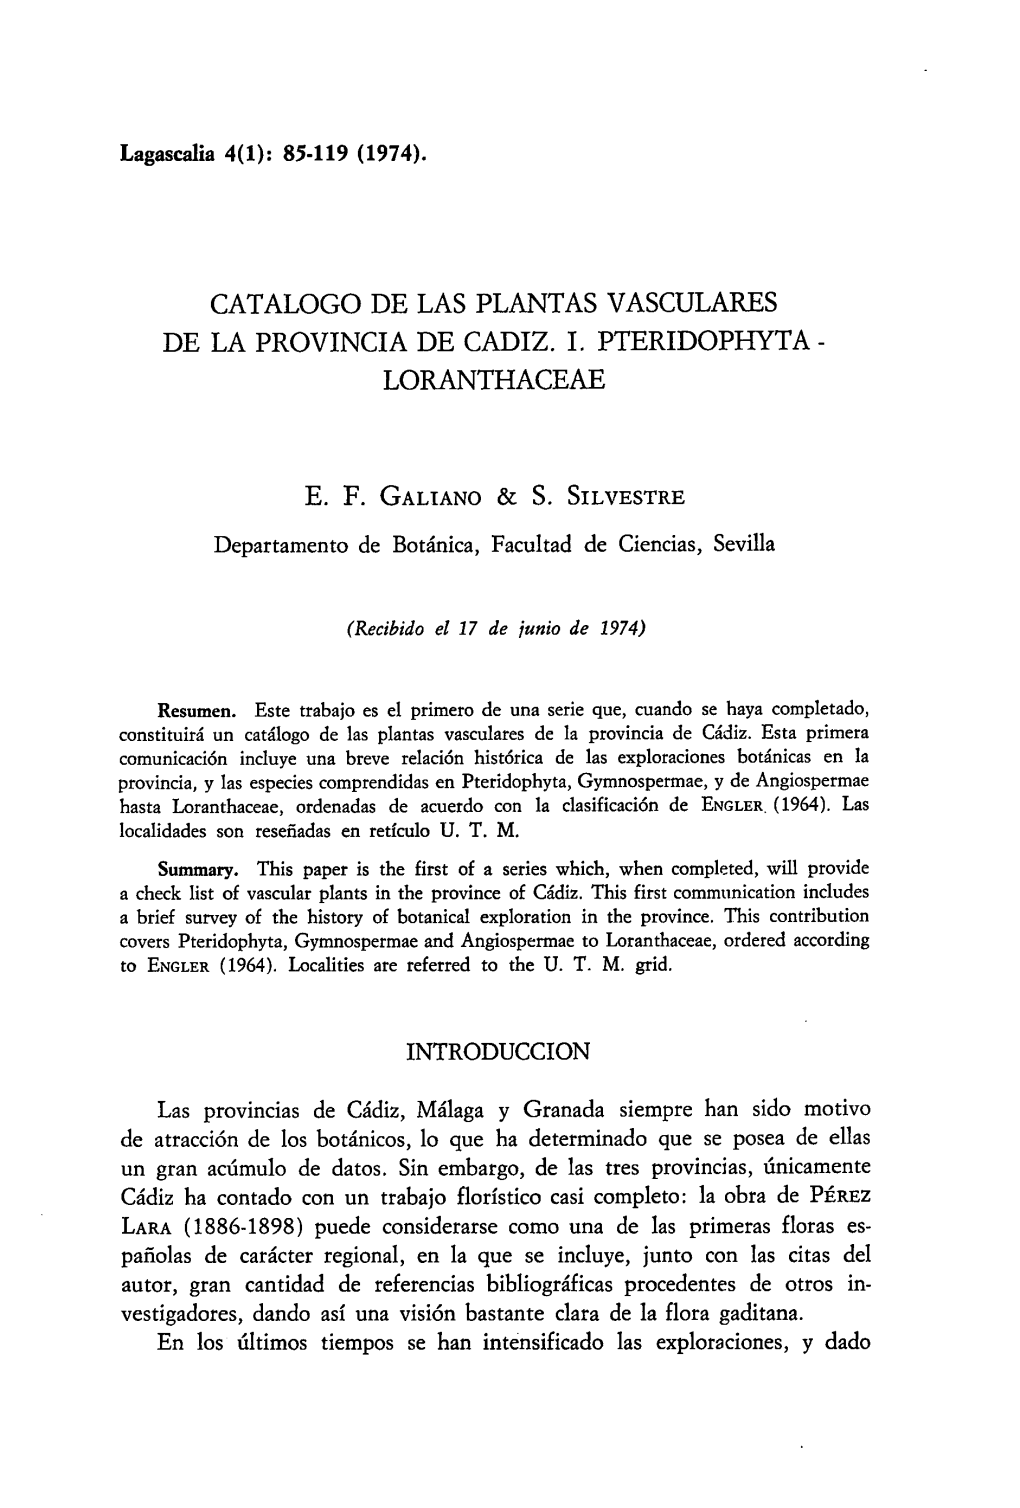 Catalogo De Las Plantas Vasculares De La Provincia De Cadiz. I. Pteridophyta - Loranthaceae